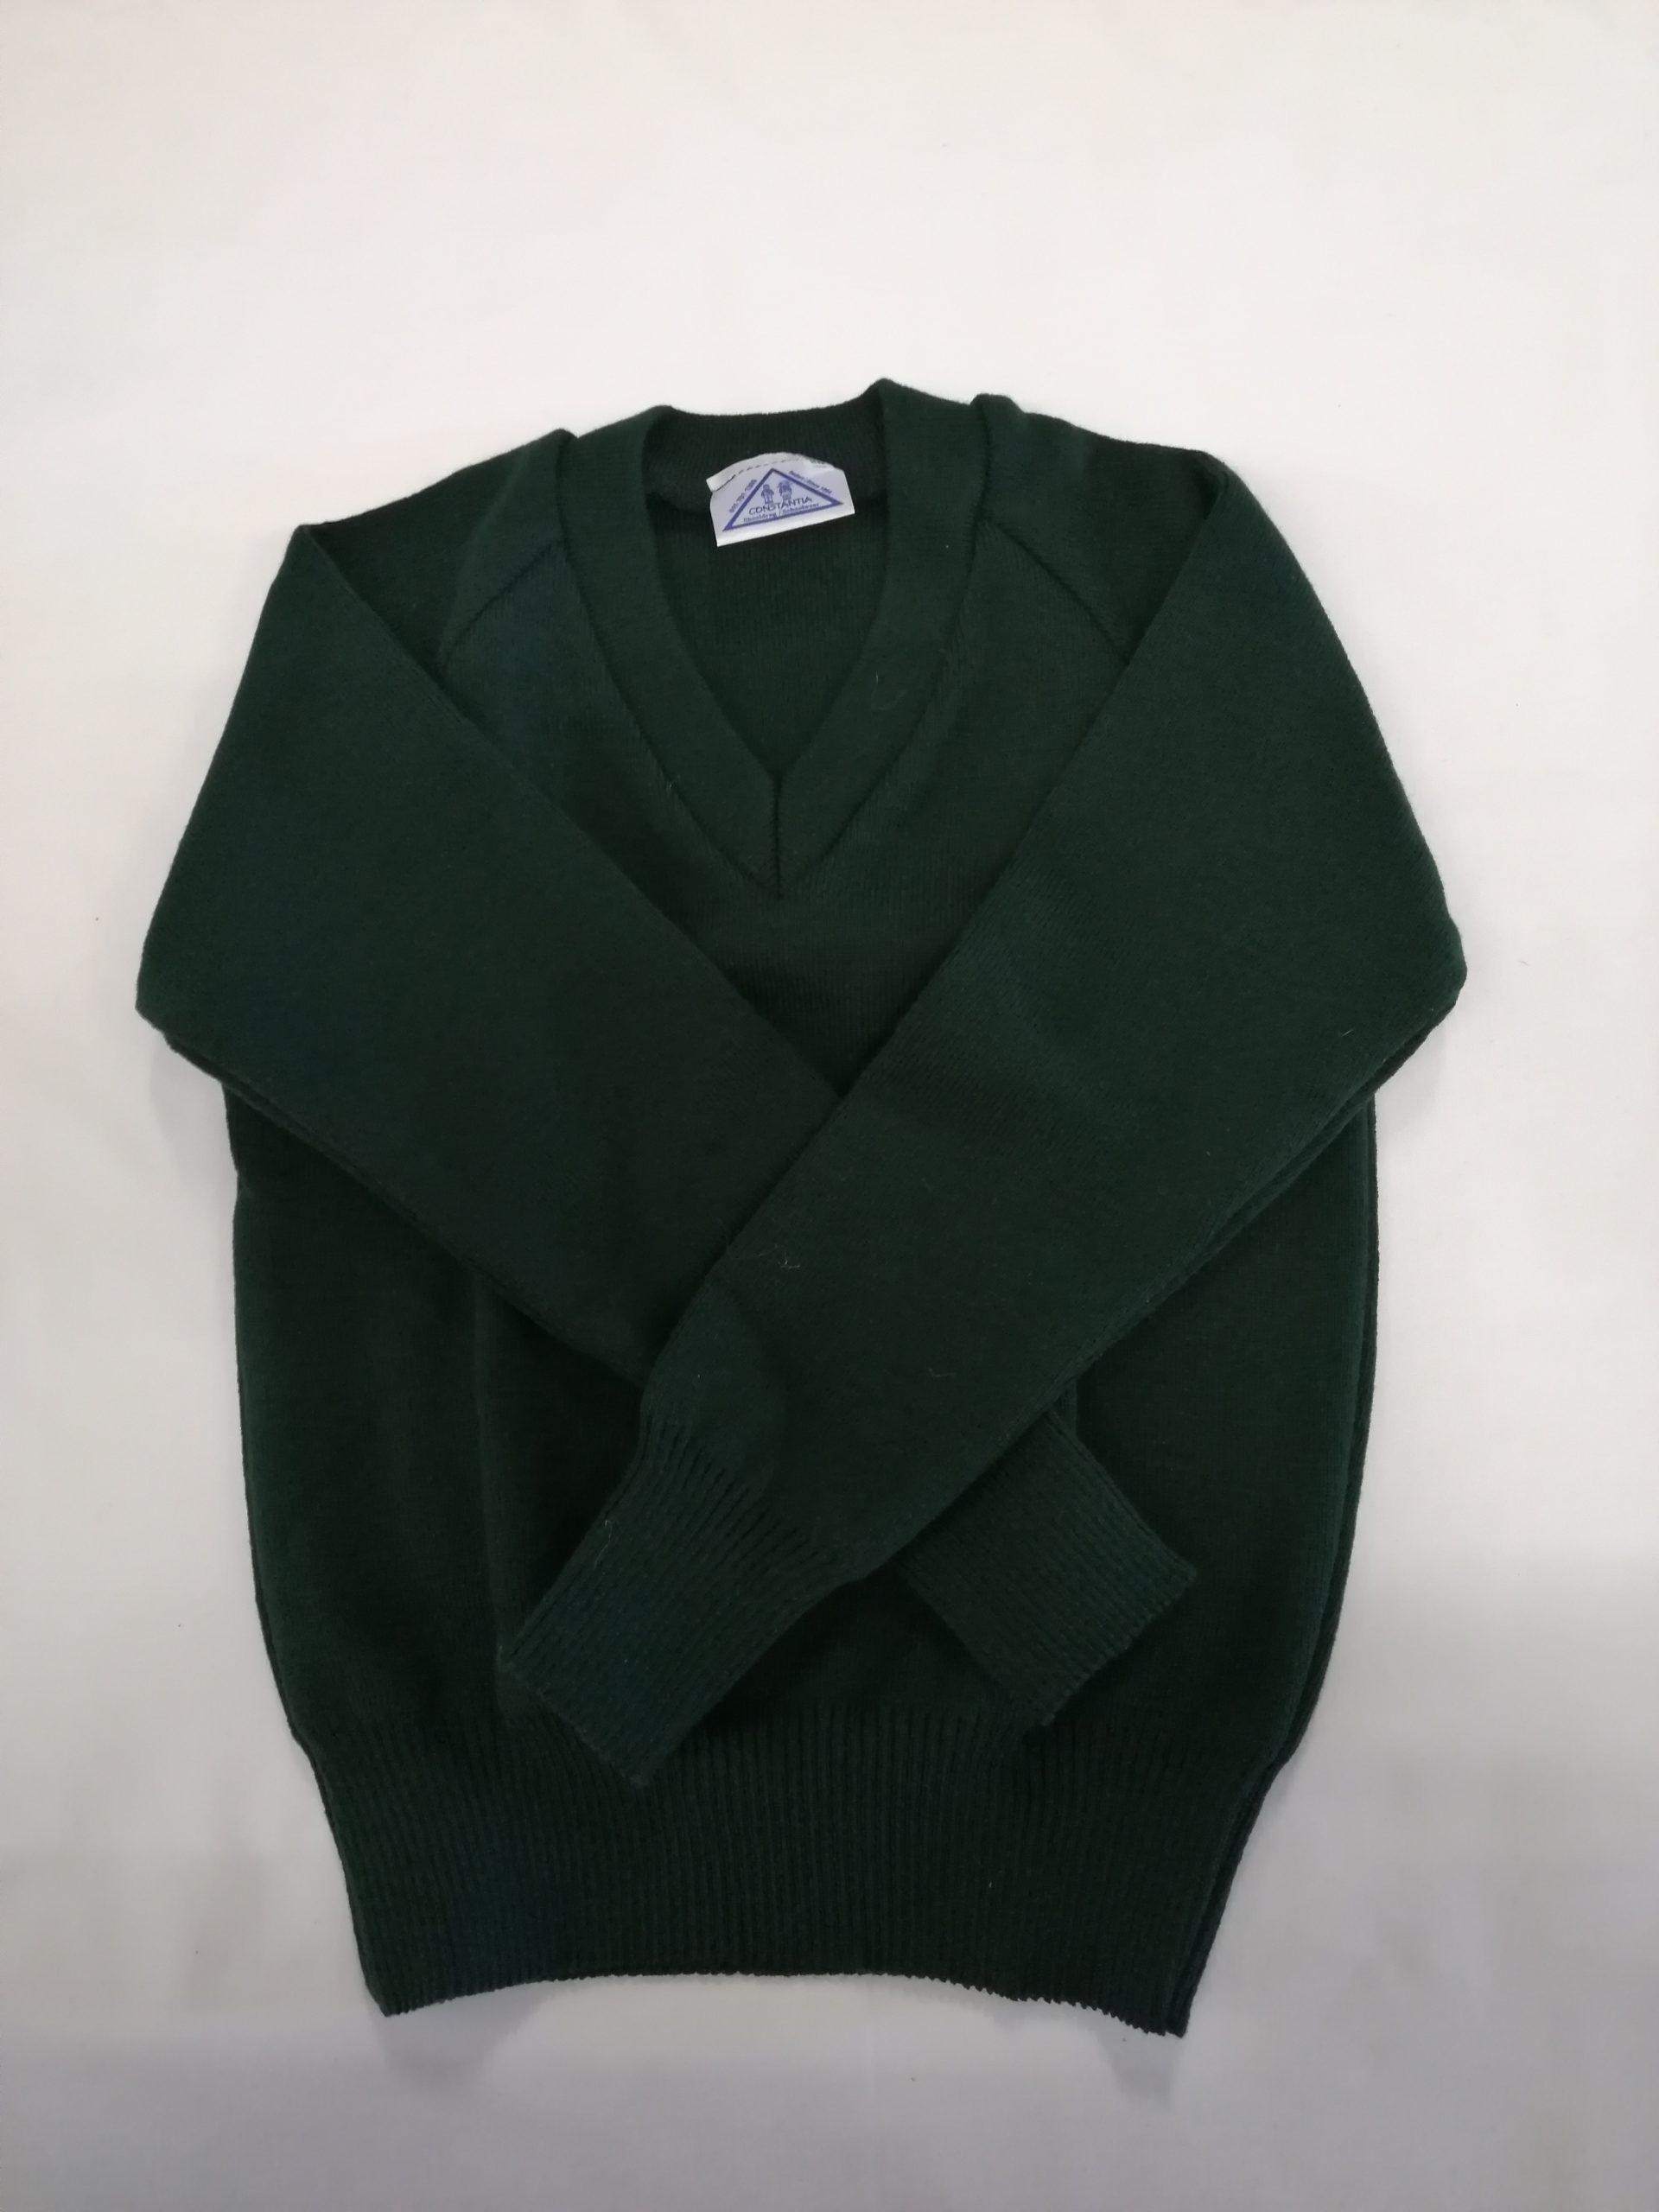 Blairgowrie jersey - Constantia Schoolwear